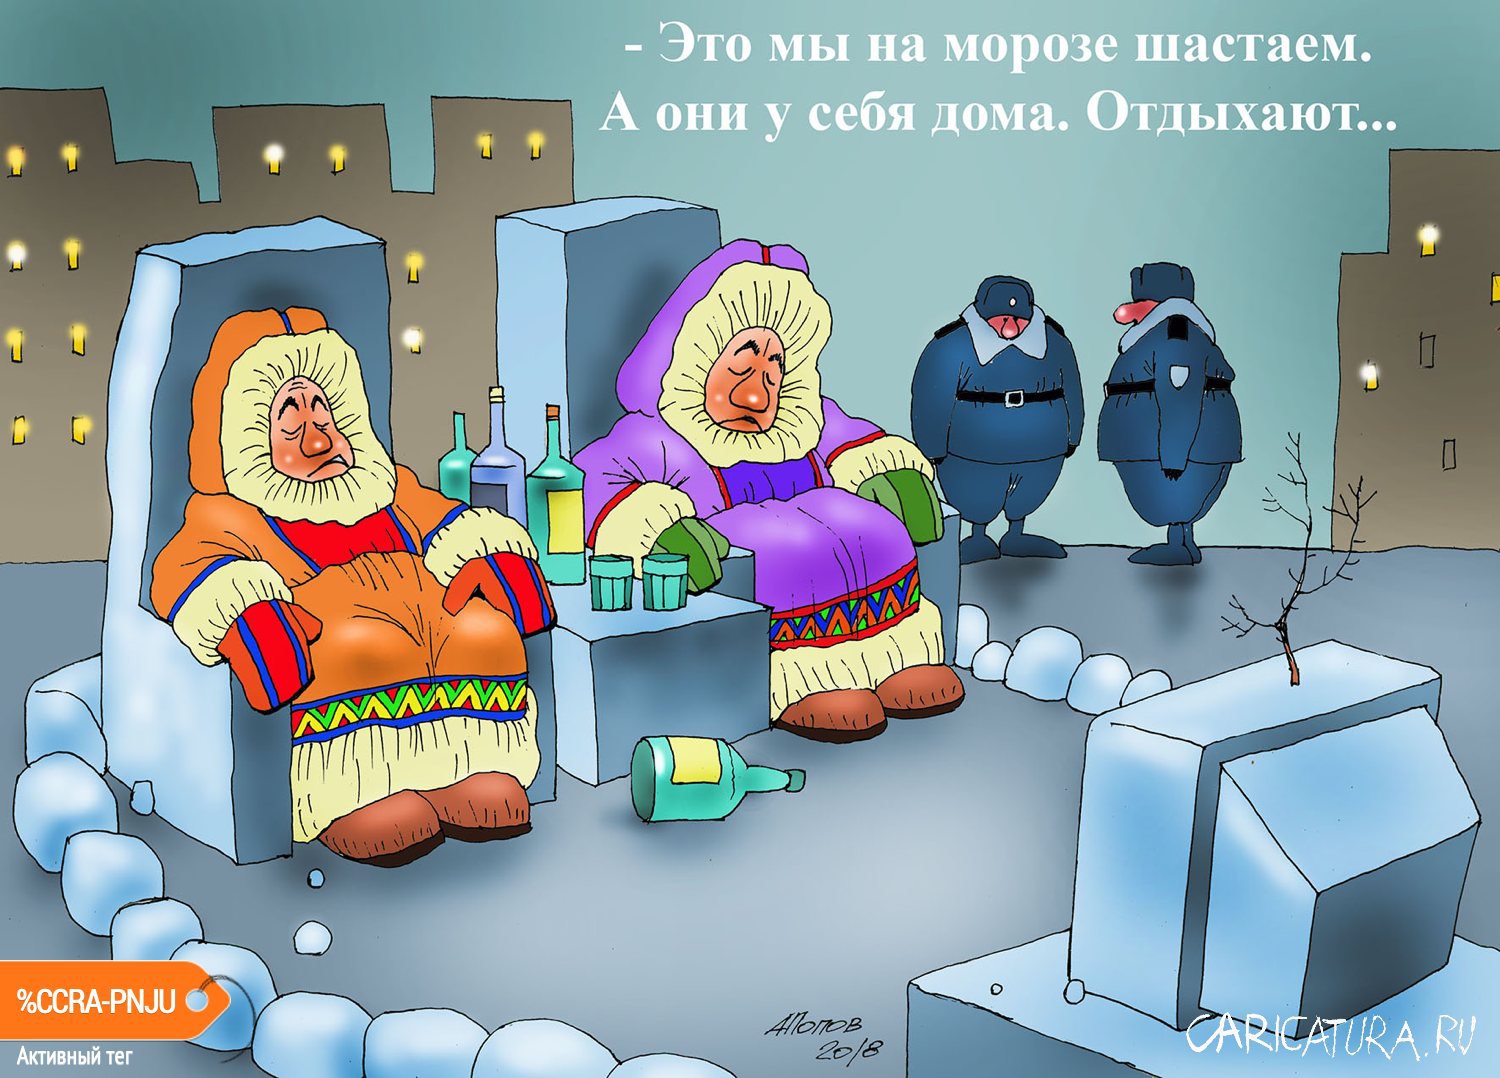 Карикатура "Мой адрес не дом и не улица...", Александр Попов